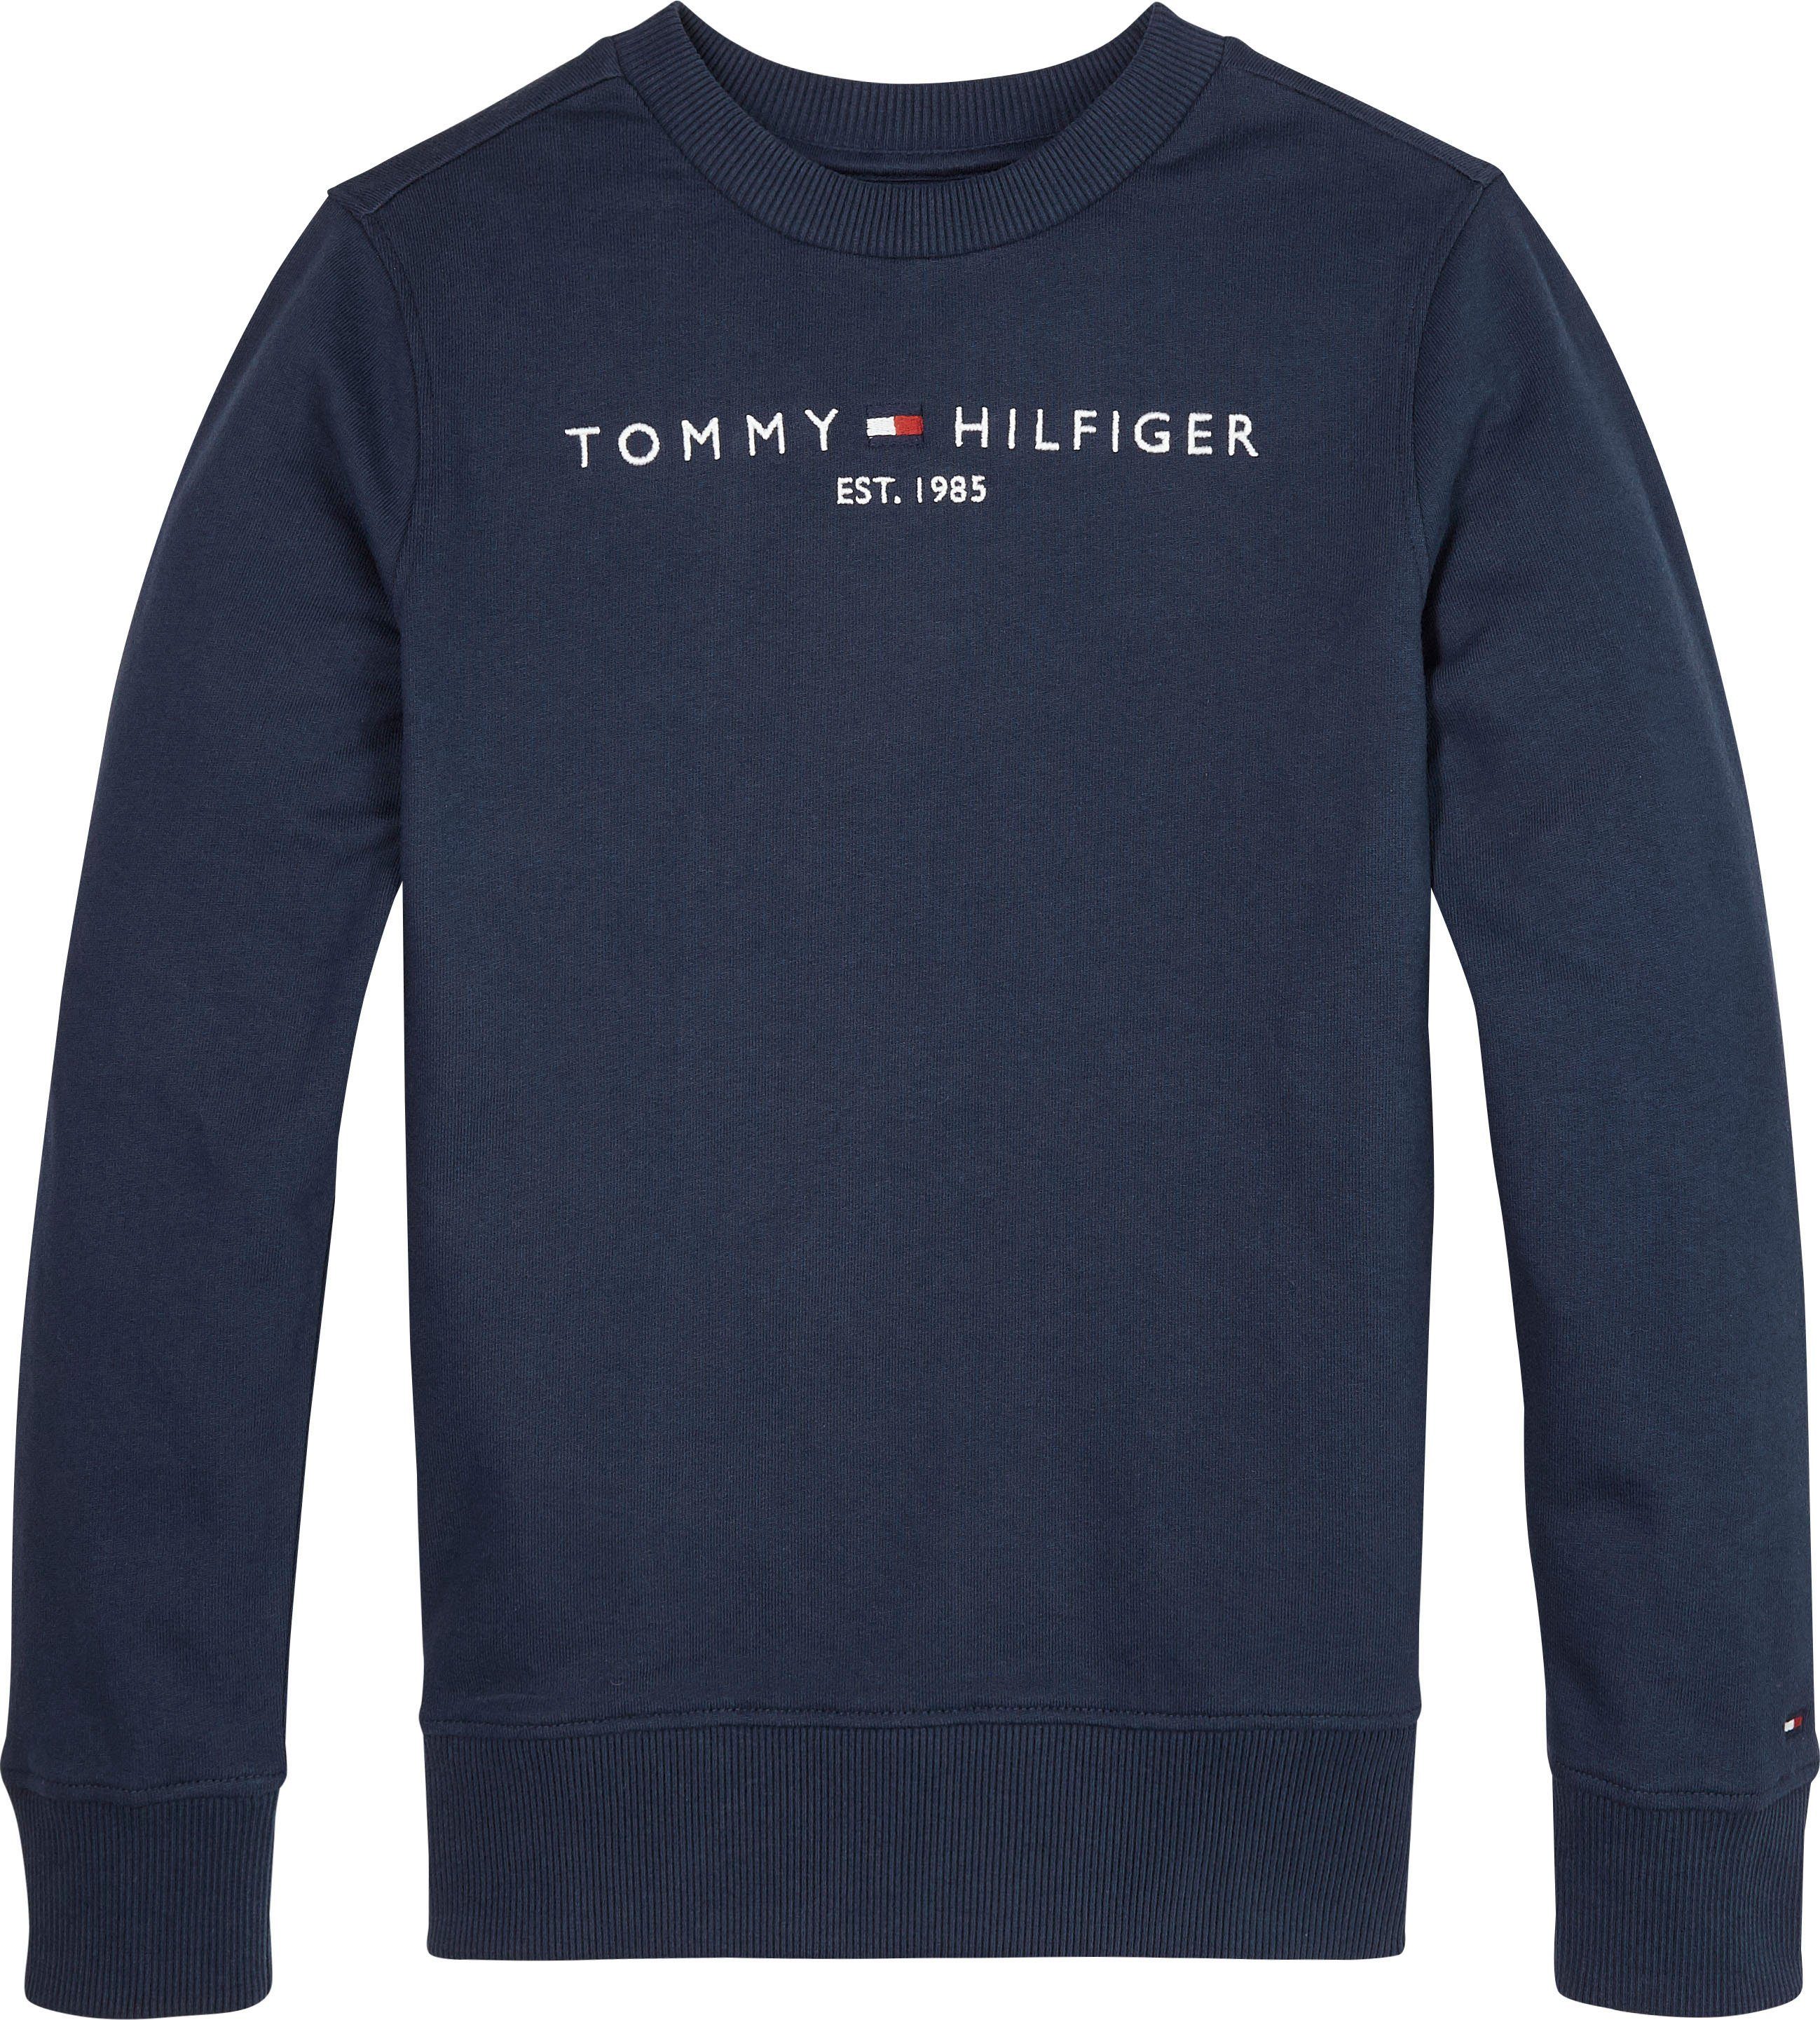 ESSENTIAL Hilfiger Tommy SWEATSHIRT Jungen Mädchen und Sweatshirt für